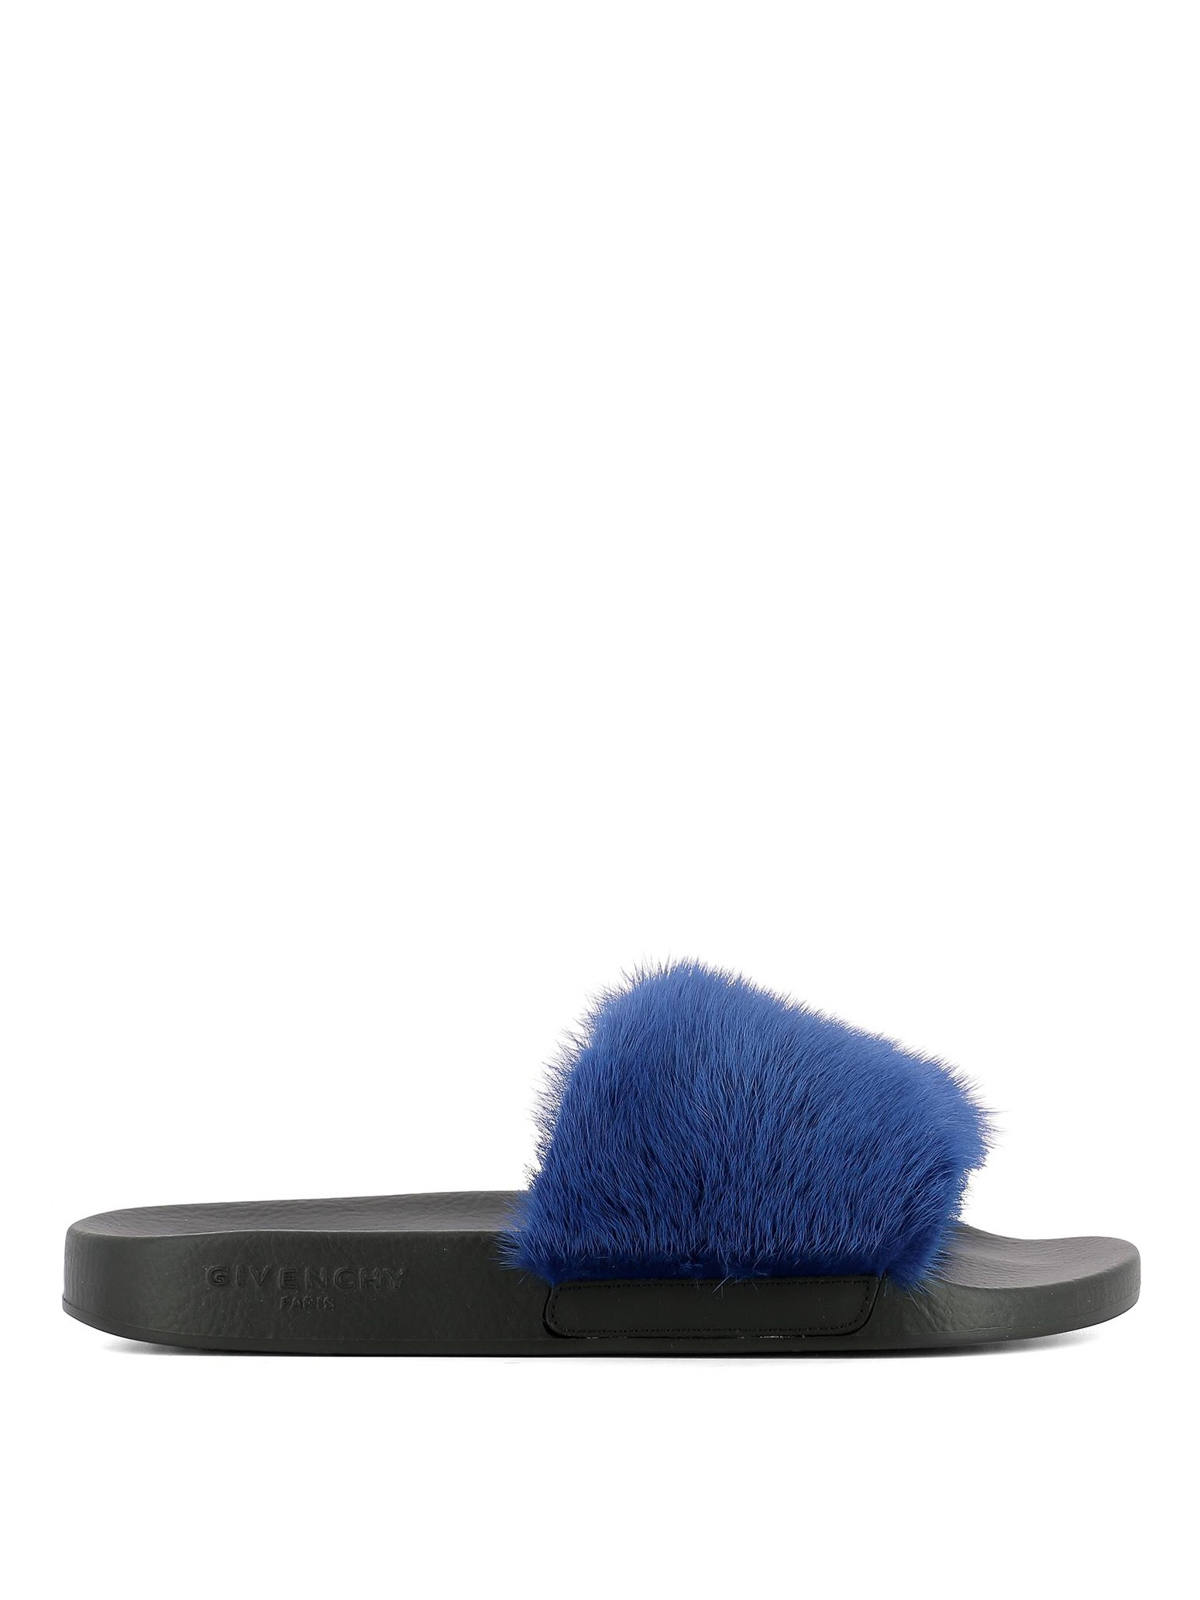 Givenchy - Blue mink fur slides 